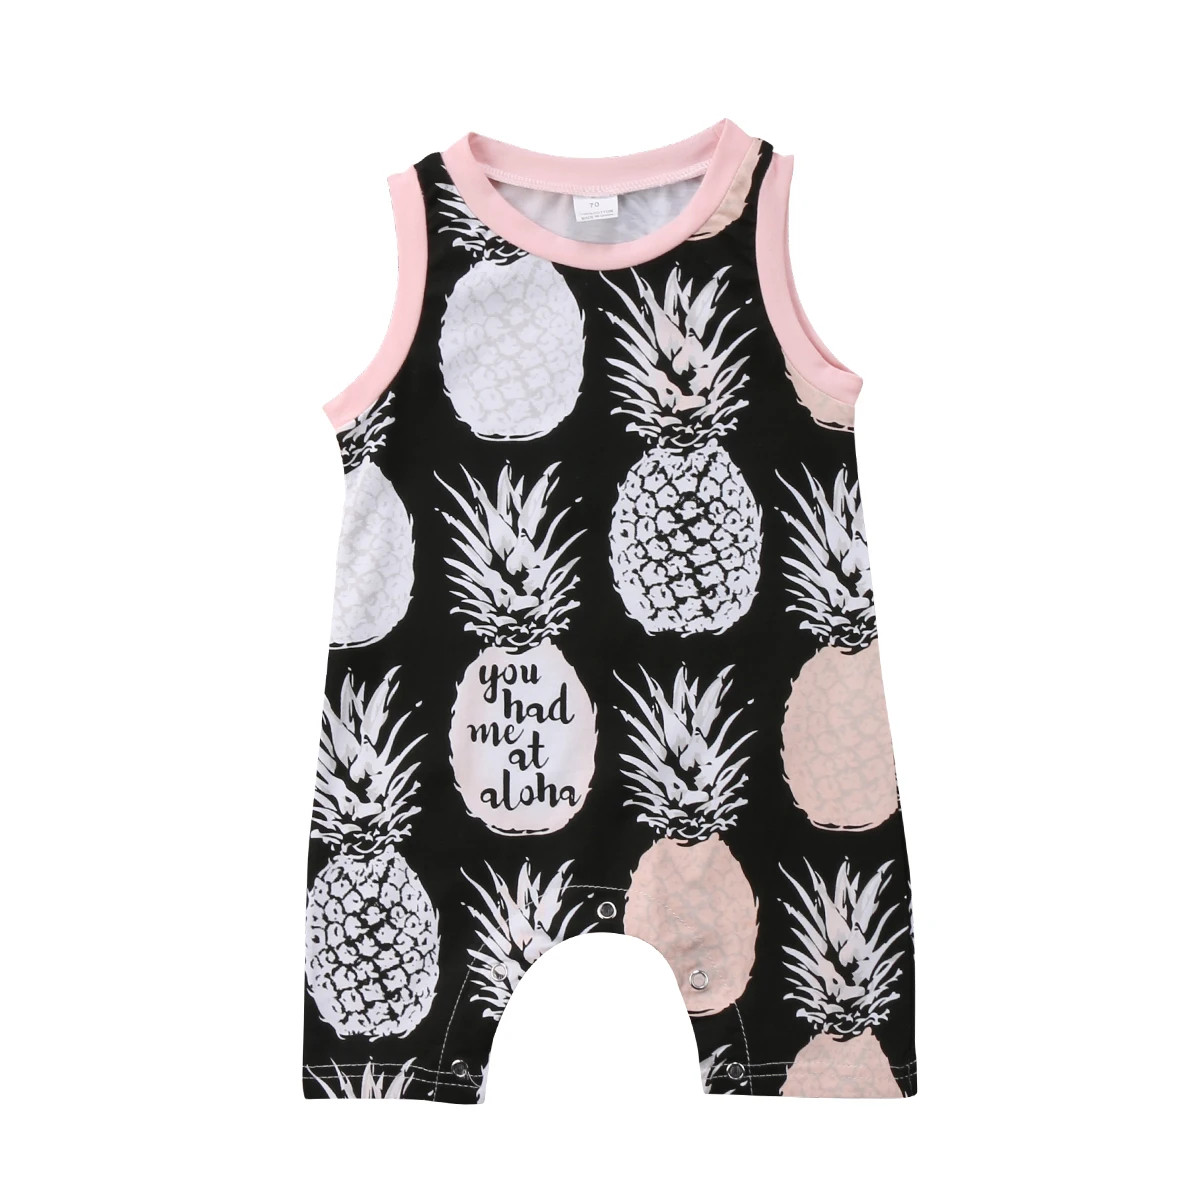 Neugeborenes Baby Mädchen Ananas Kleidung Rüschen Strampler Overall Outfits Set 